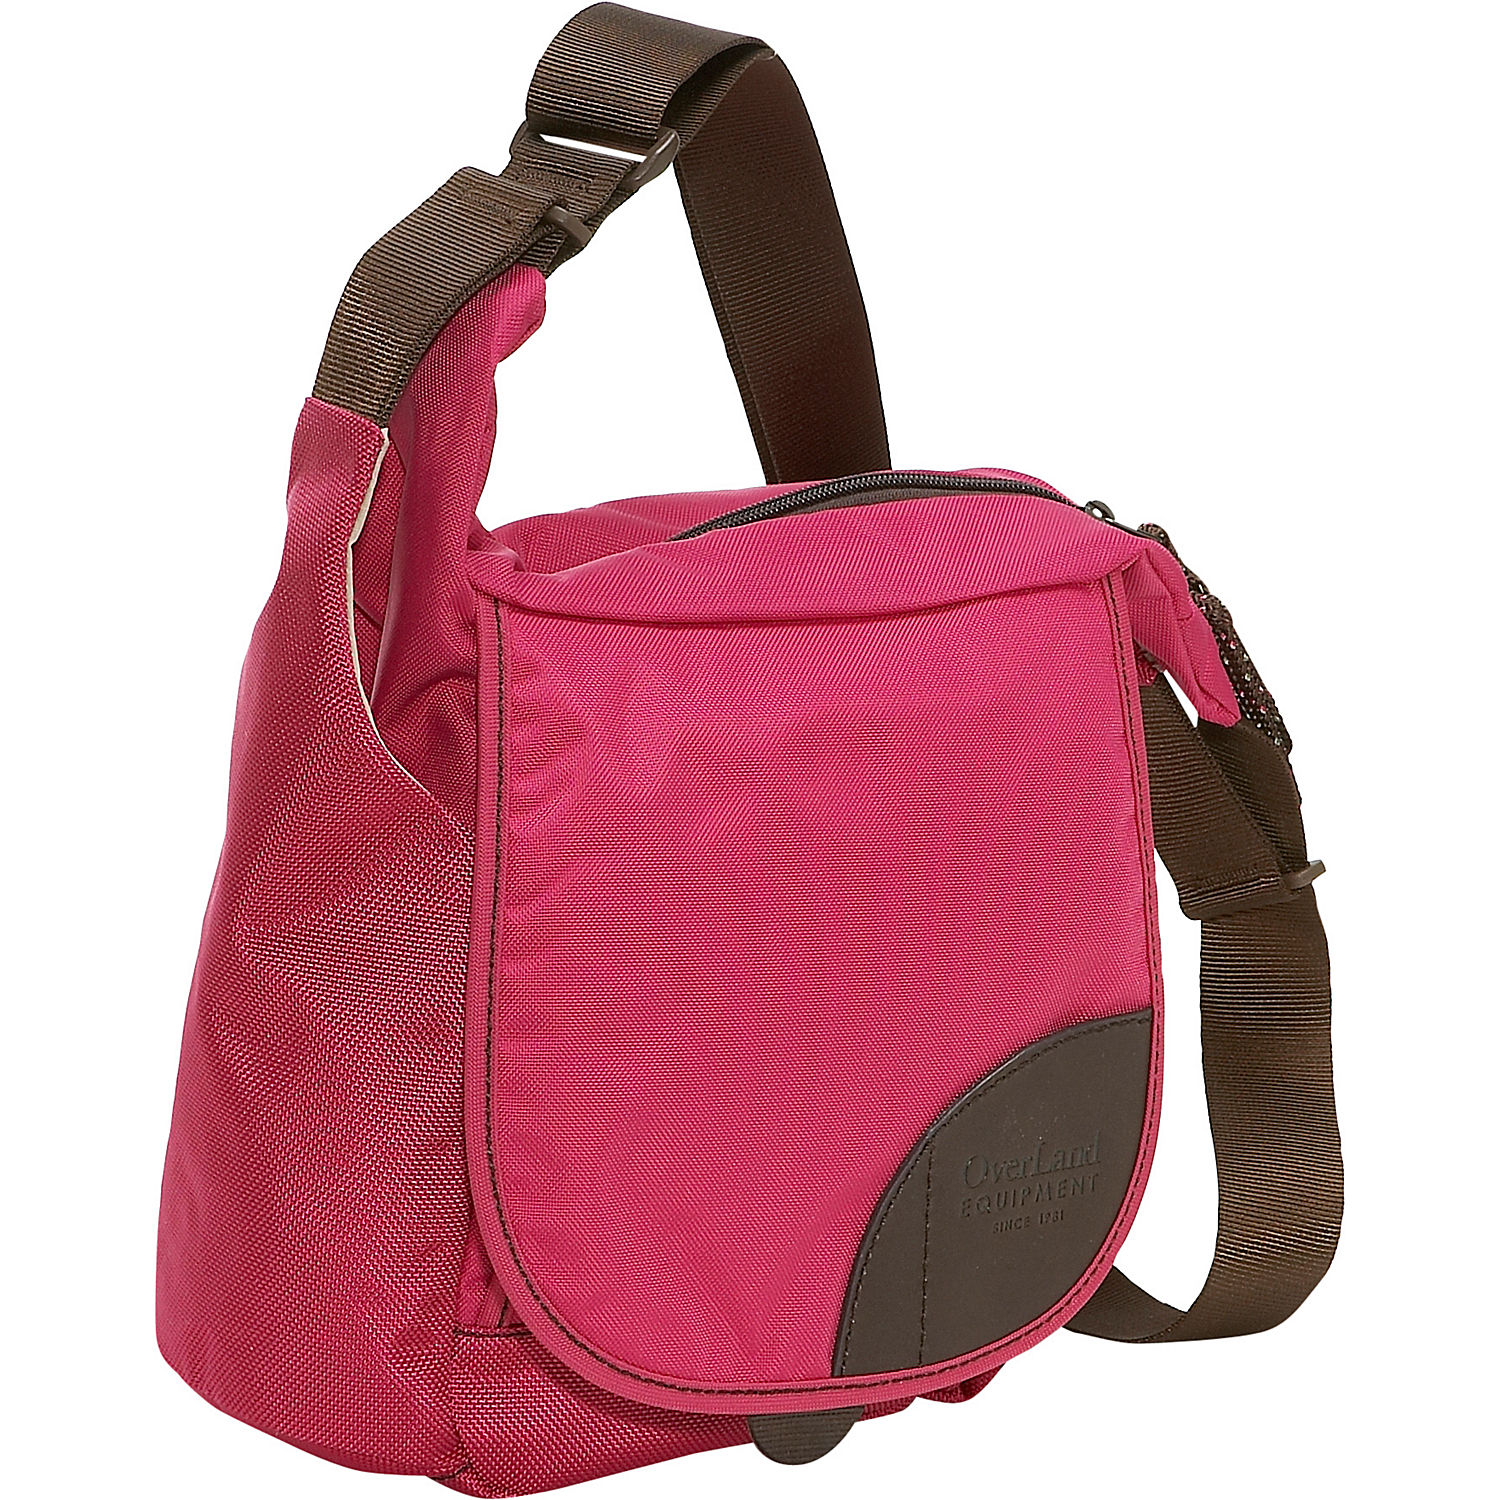 Overland Equipment Donner Shoulder Bag Sale – Shoulder Travel Bag